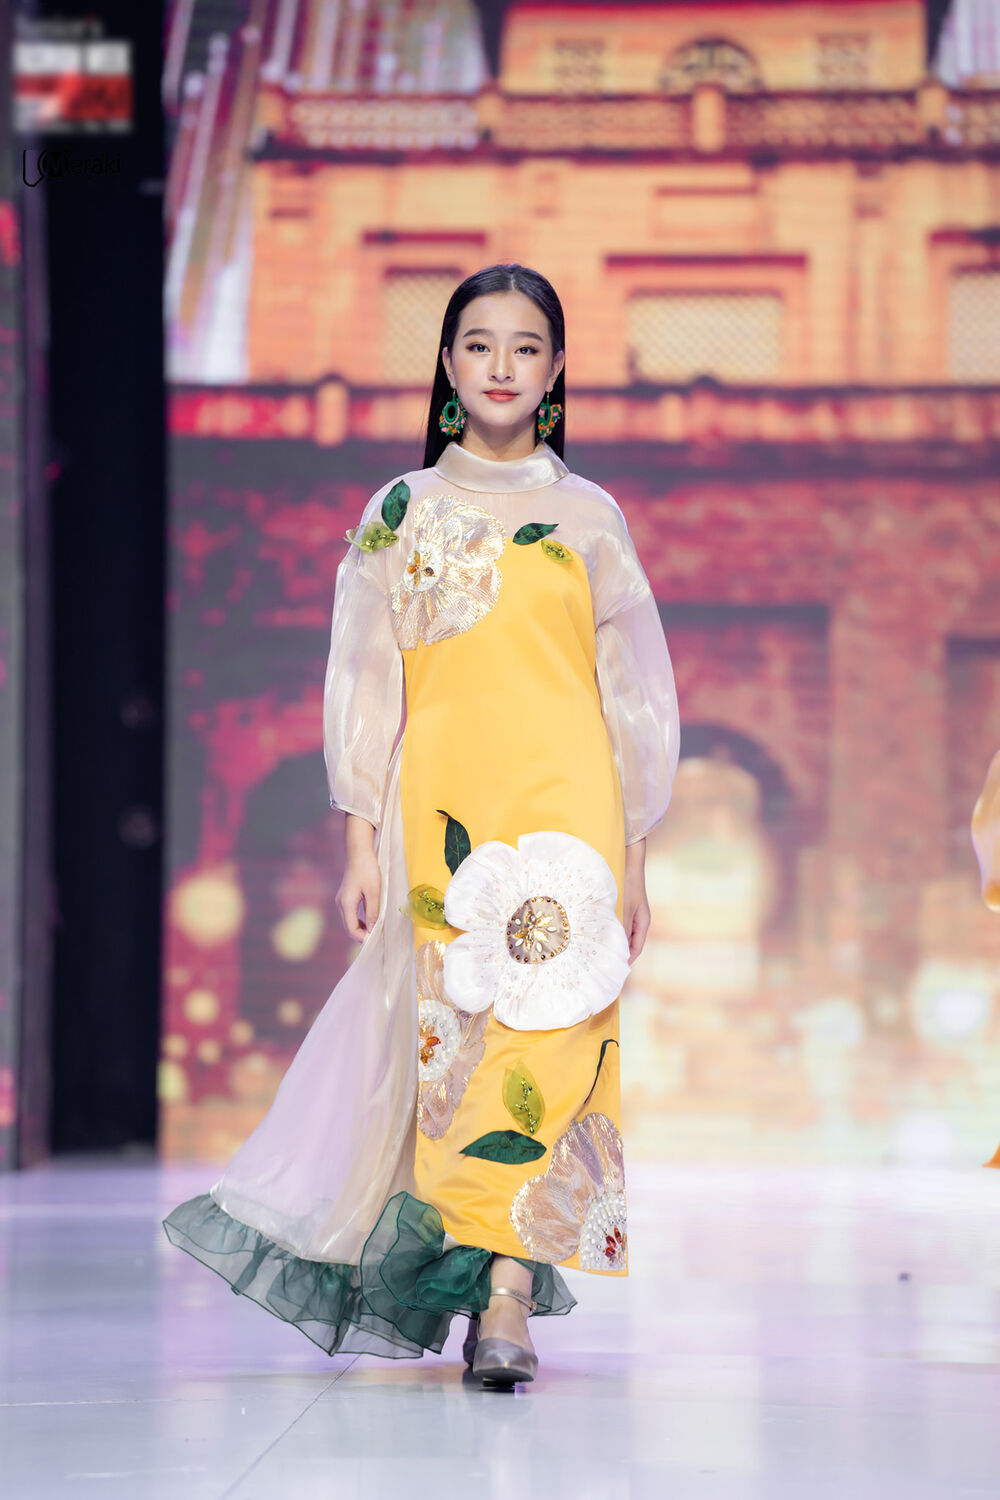 Quỳnh Anh còn sở hữu cả kỹ năng trình diễn tại các chương trình về nhan sắc và thời trang.